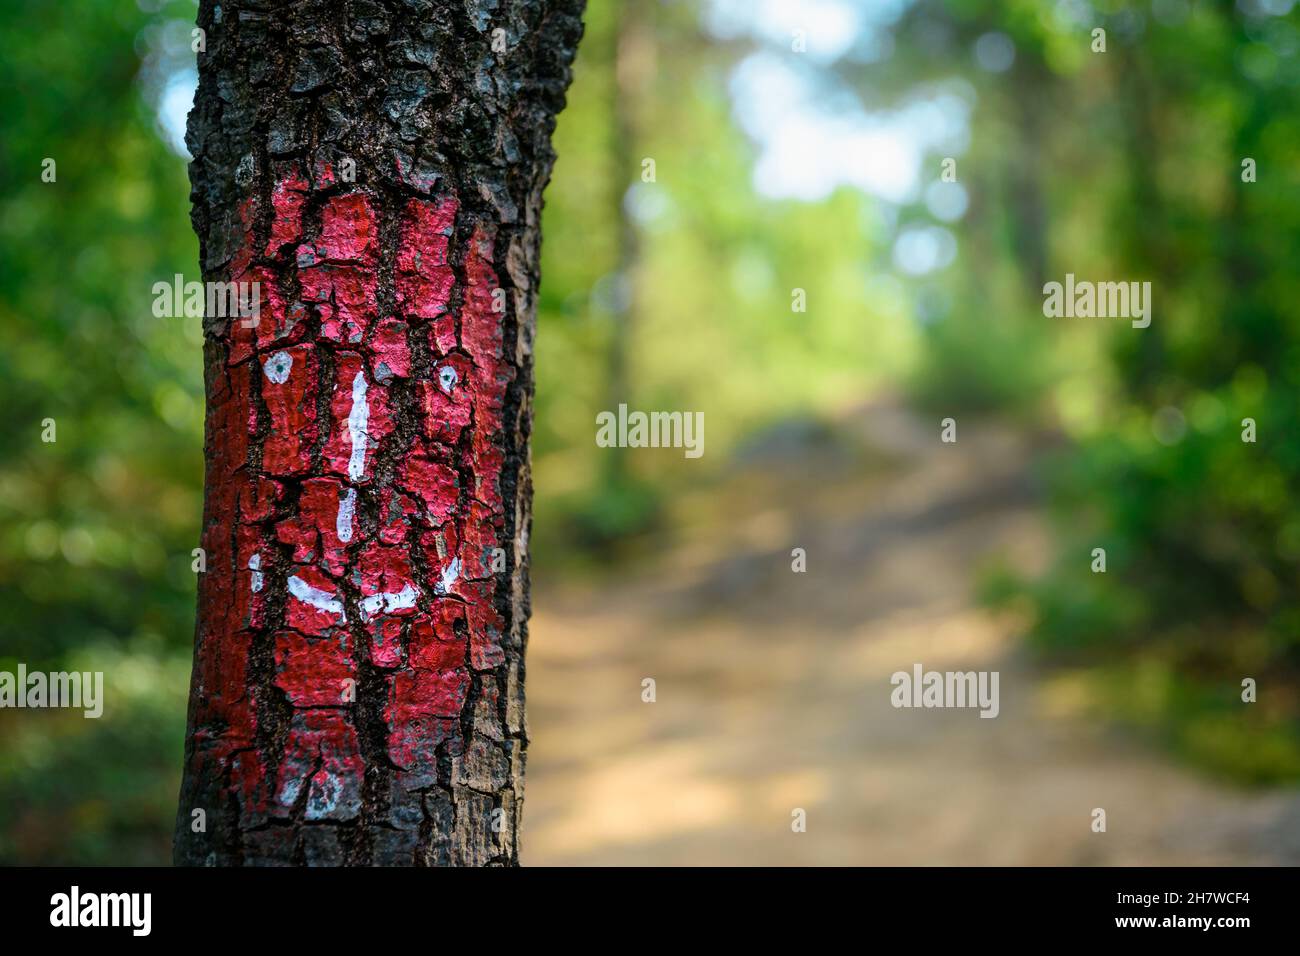 Visage humain graphique peint sur un arbre sur un chemin forestier.L'esprit gardien de la forêt Banque D'Images